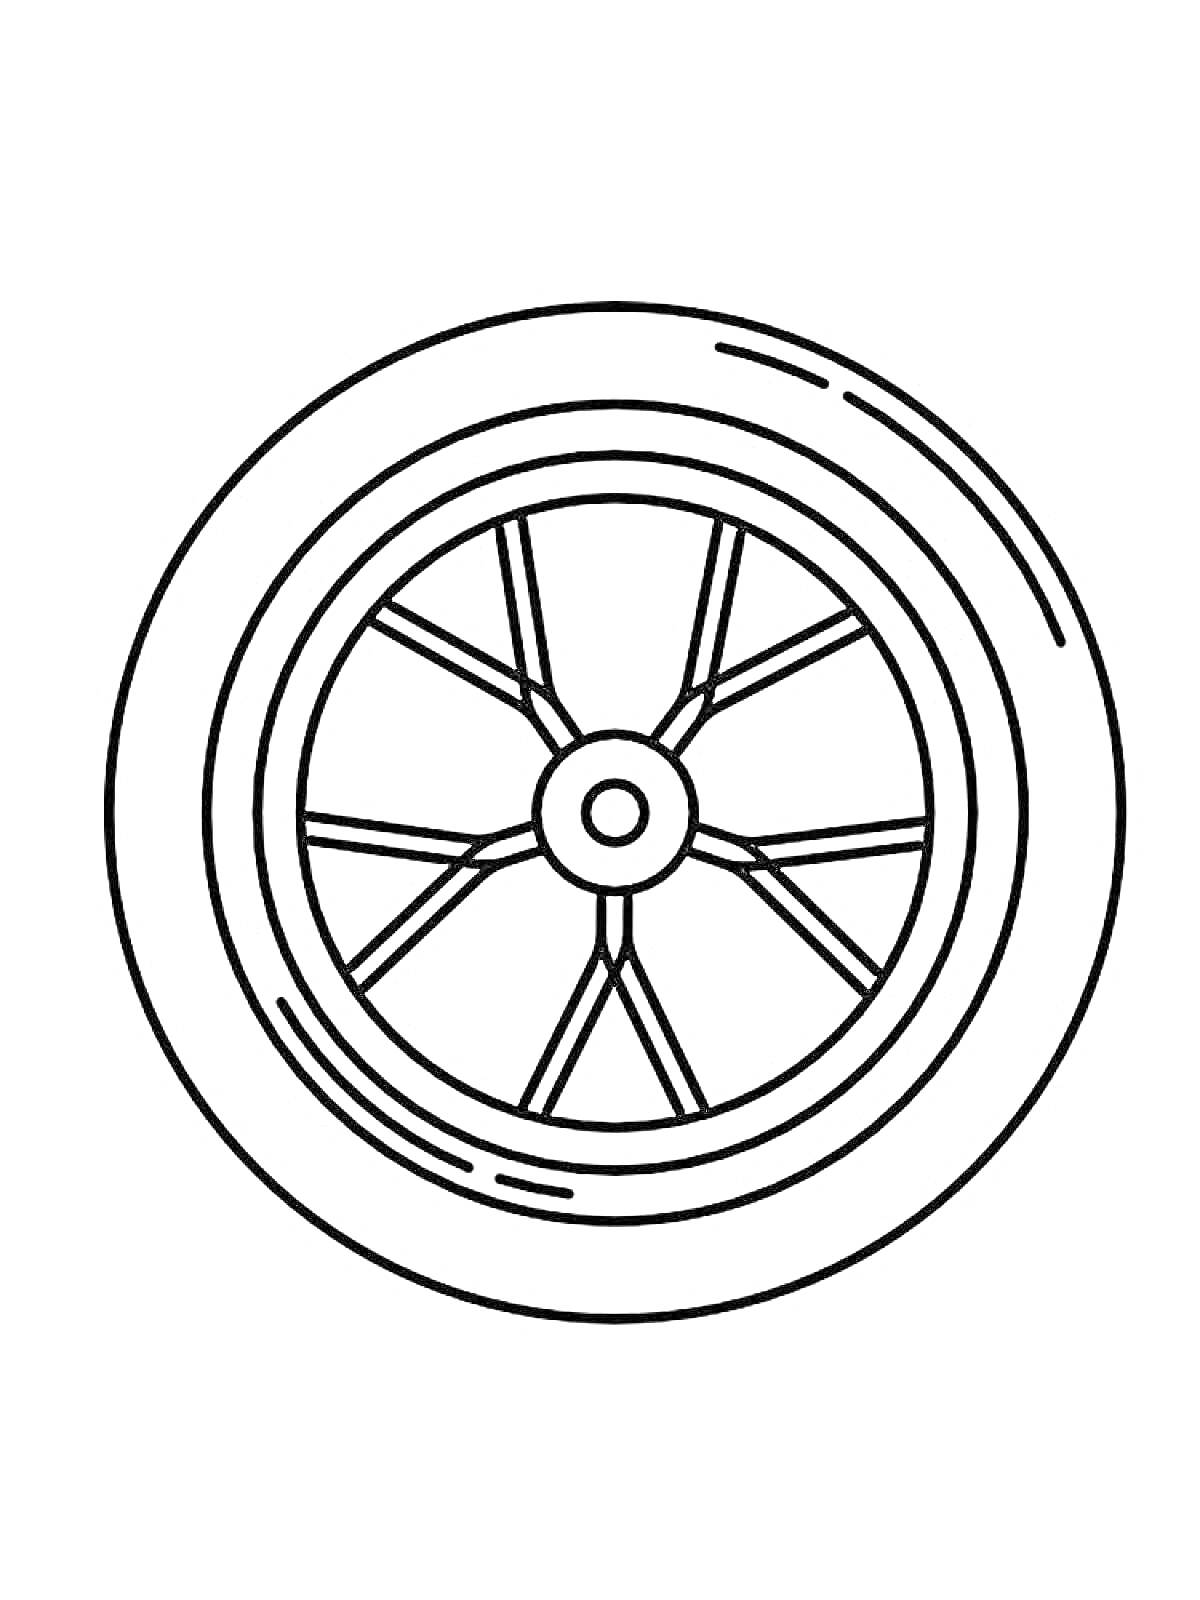 Раскраска с изображением колеса с десятью спицами и центральным креплением